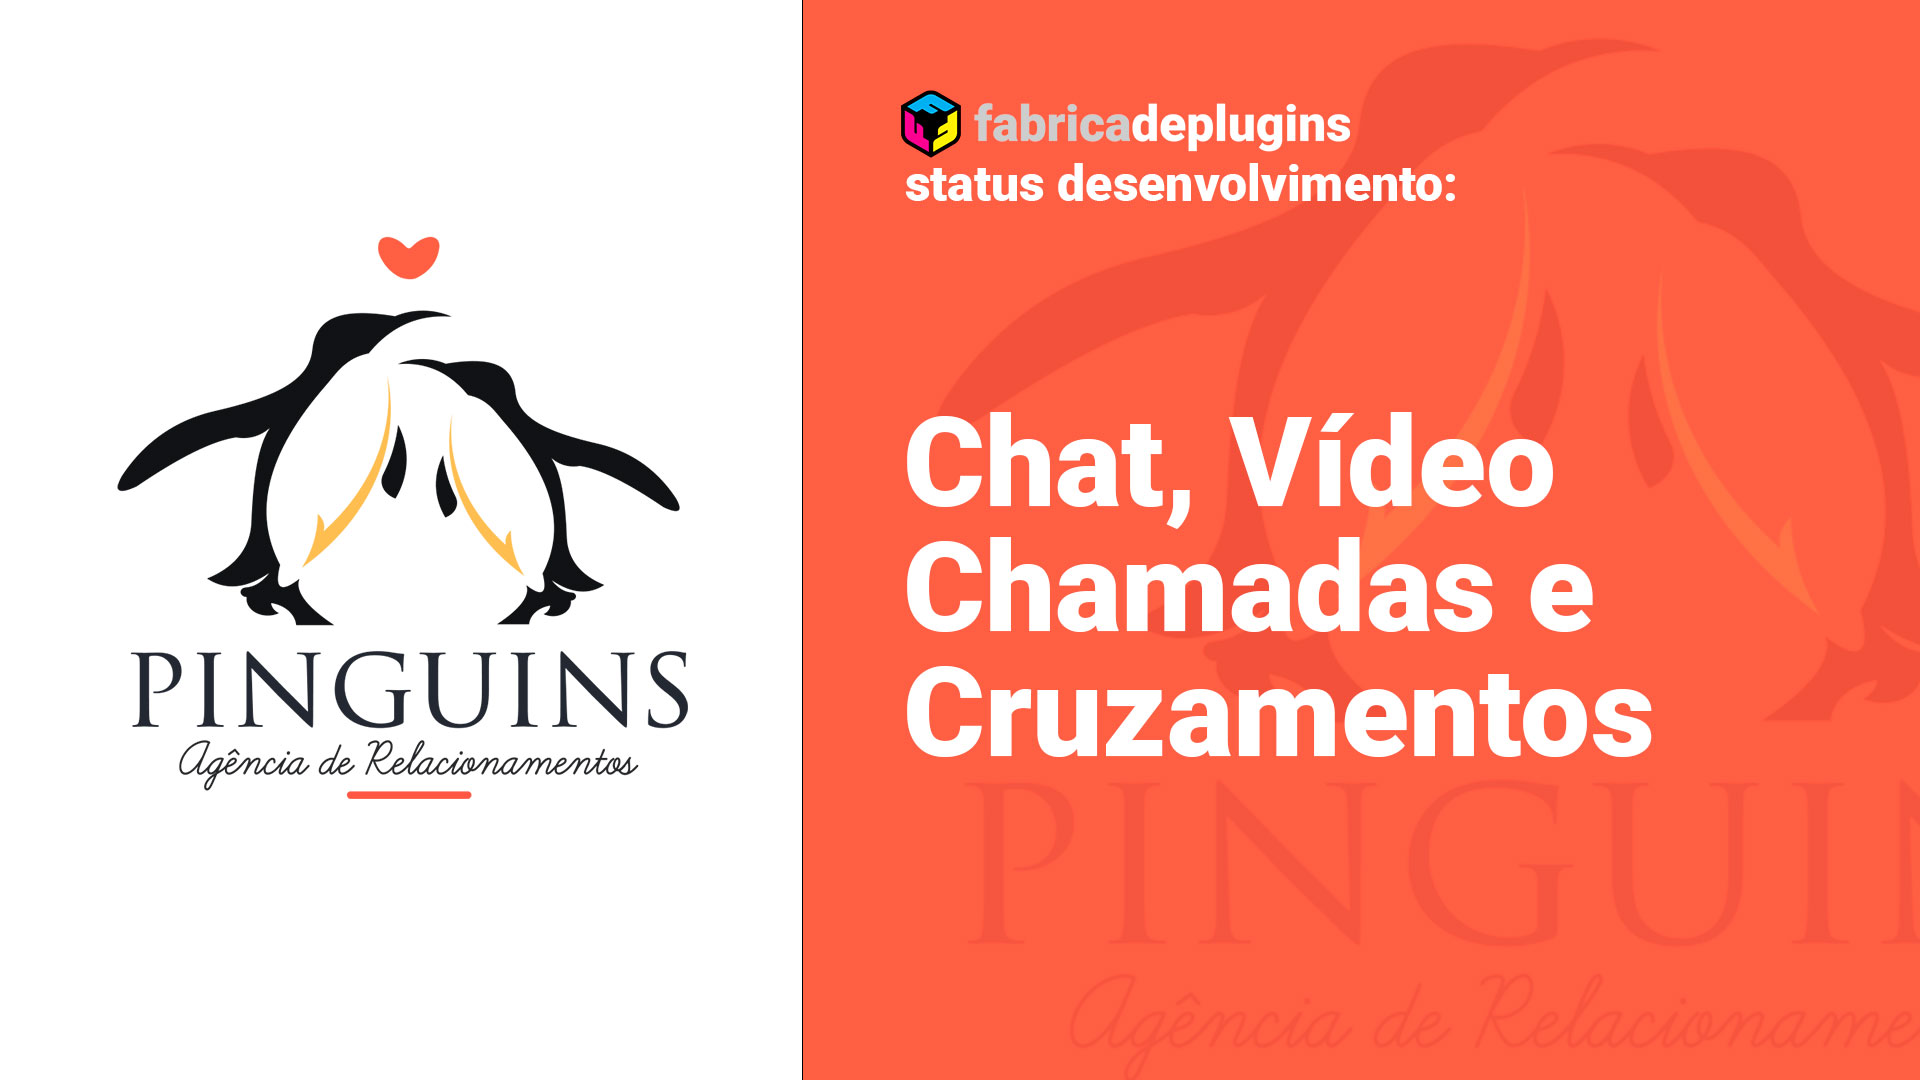 Status do desenvolvimento Pinguins: Chat, Chamadas de Vídeo e Cruzamentos